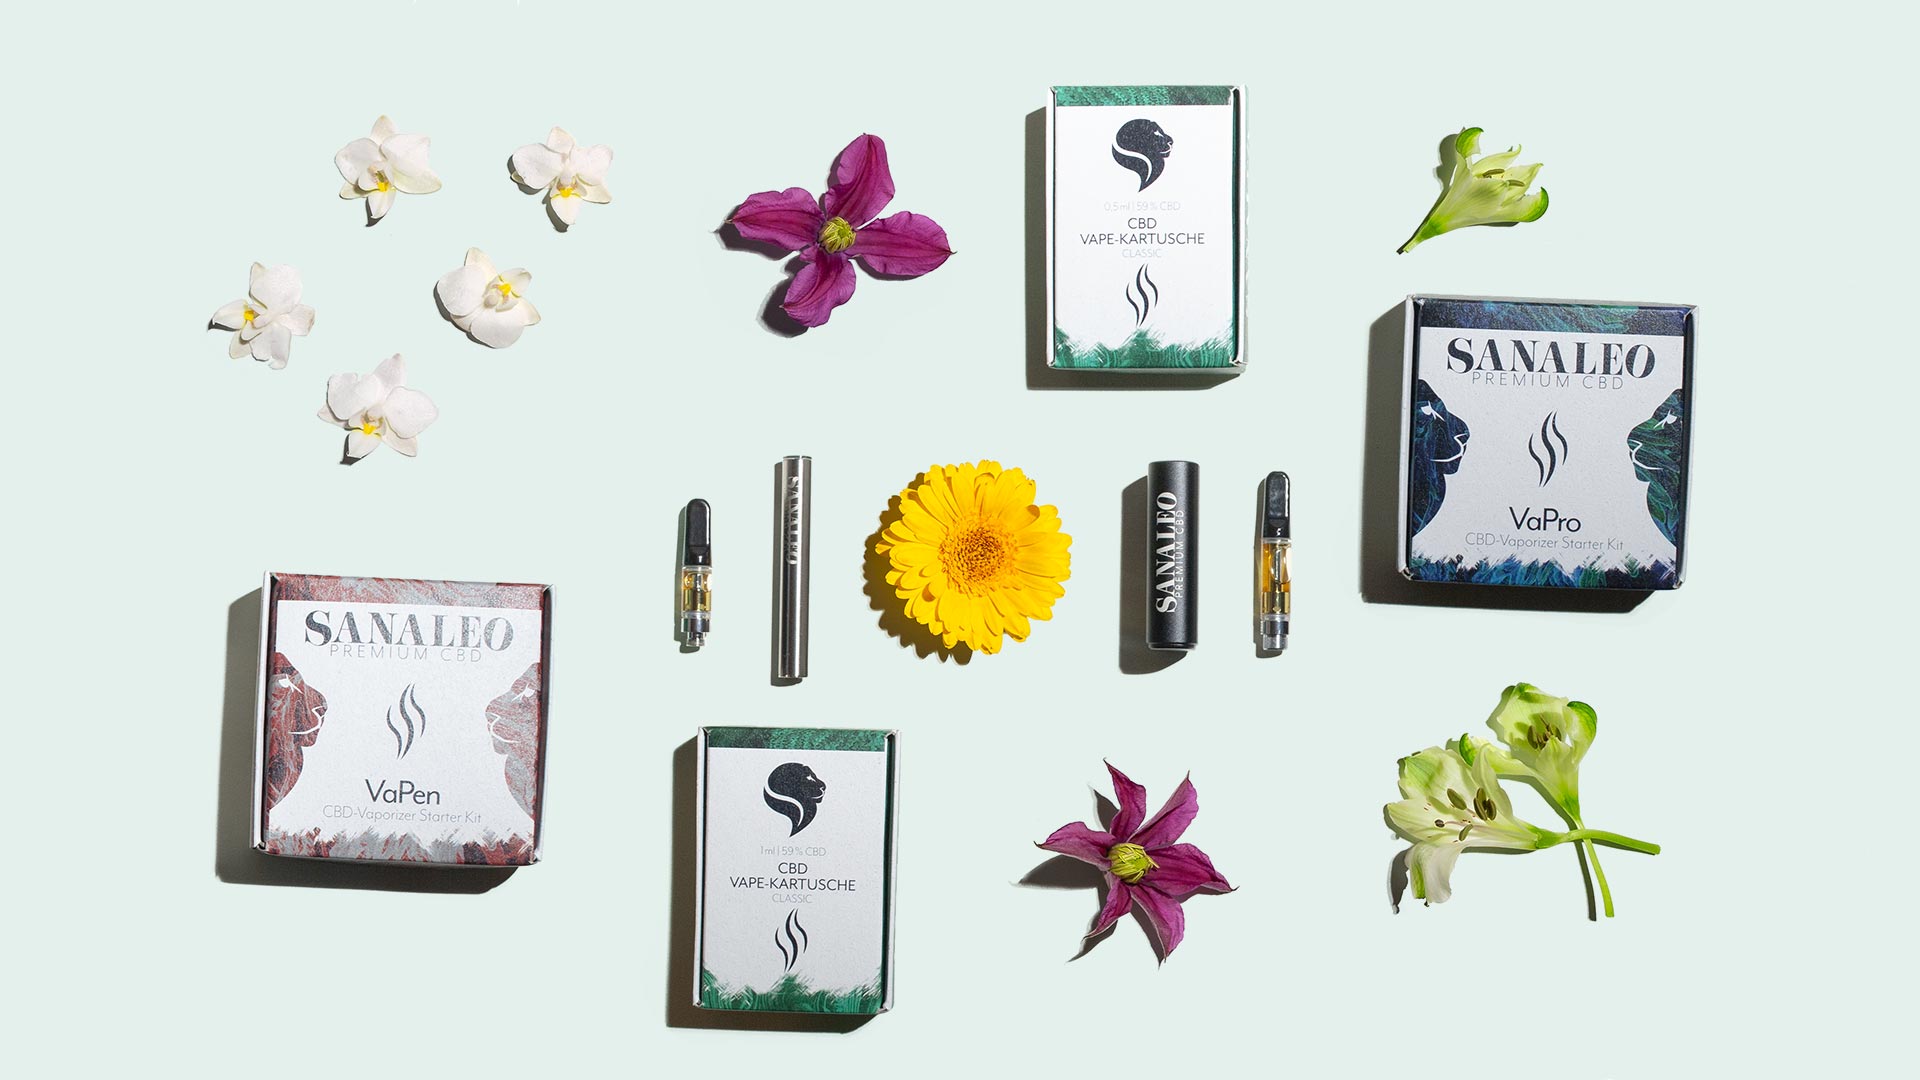 Collage bestehend aus CBD-Vaporizern und anderen Produkten in unserem Vape Sortiment sowie Blumen und anderen Dekoelementen